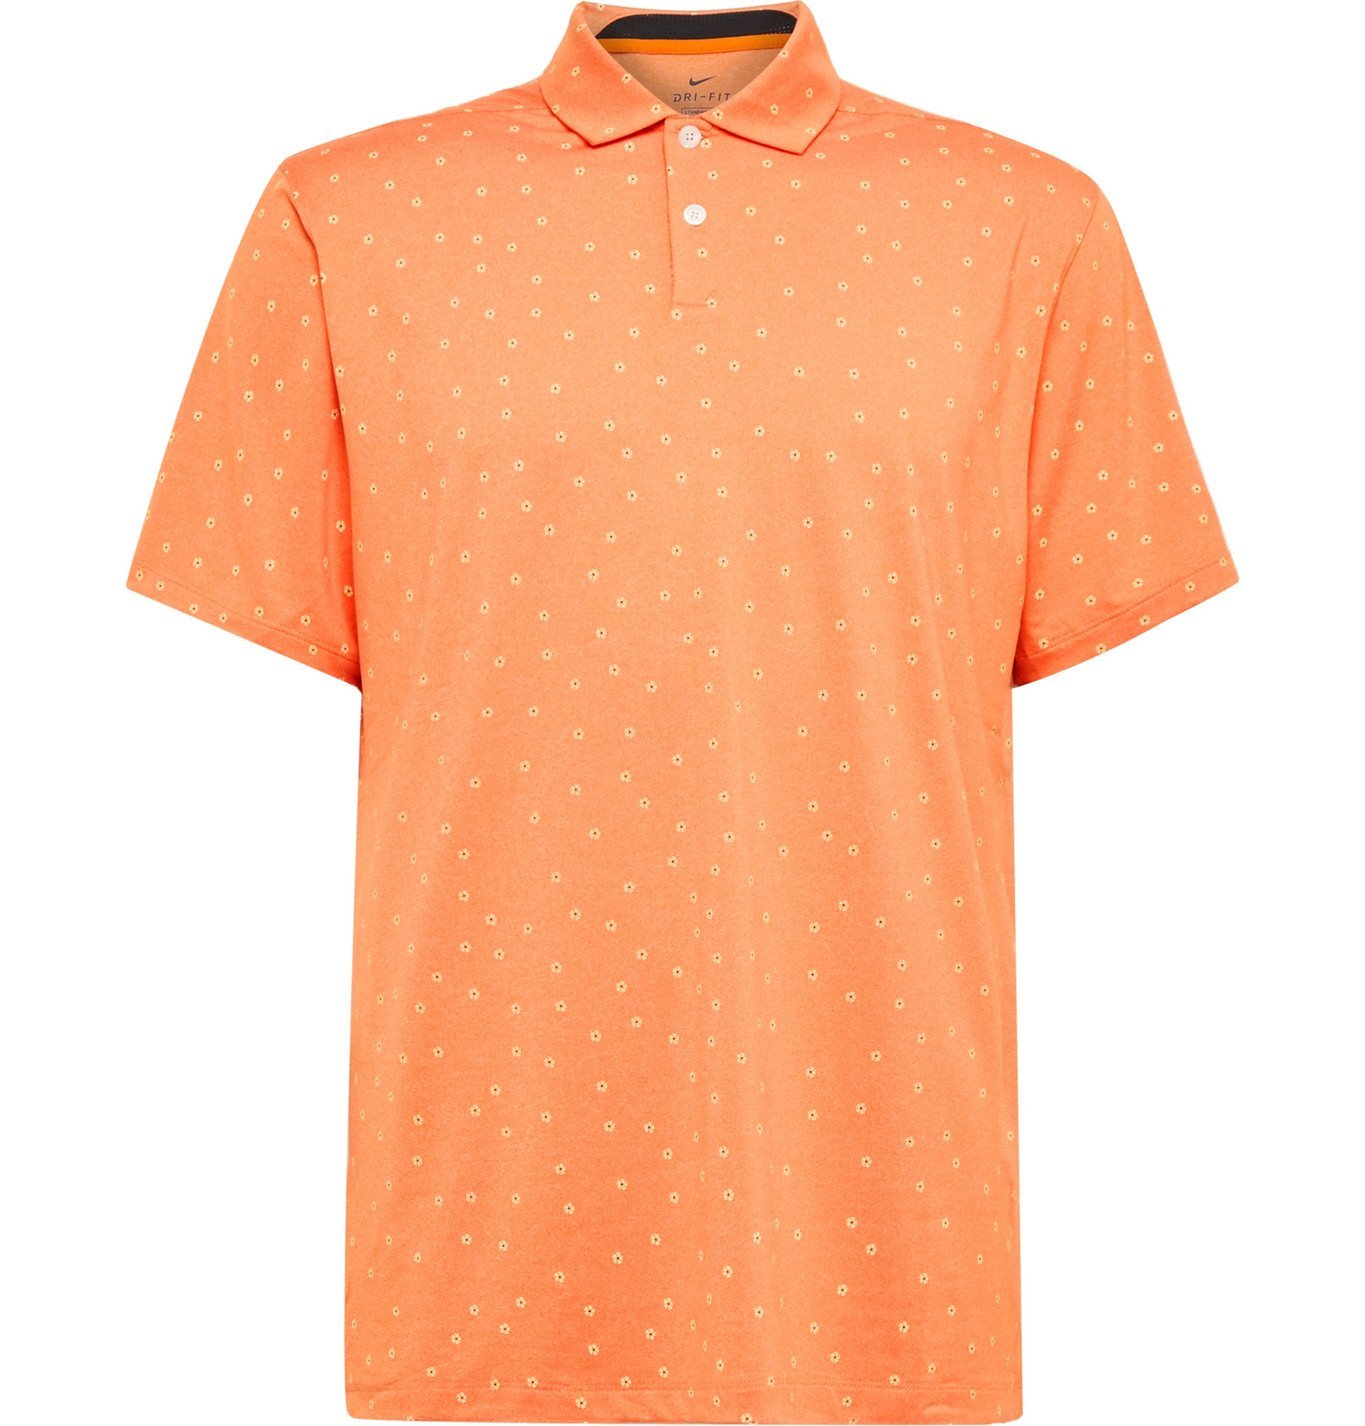 orange nike golf shirt